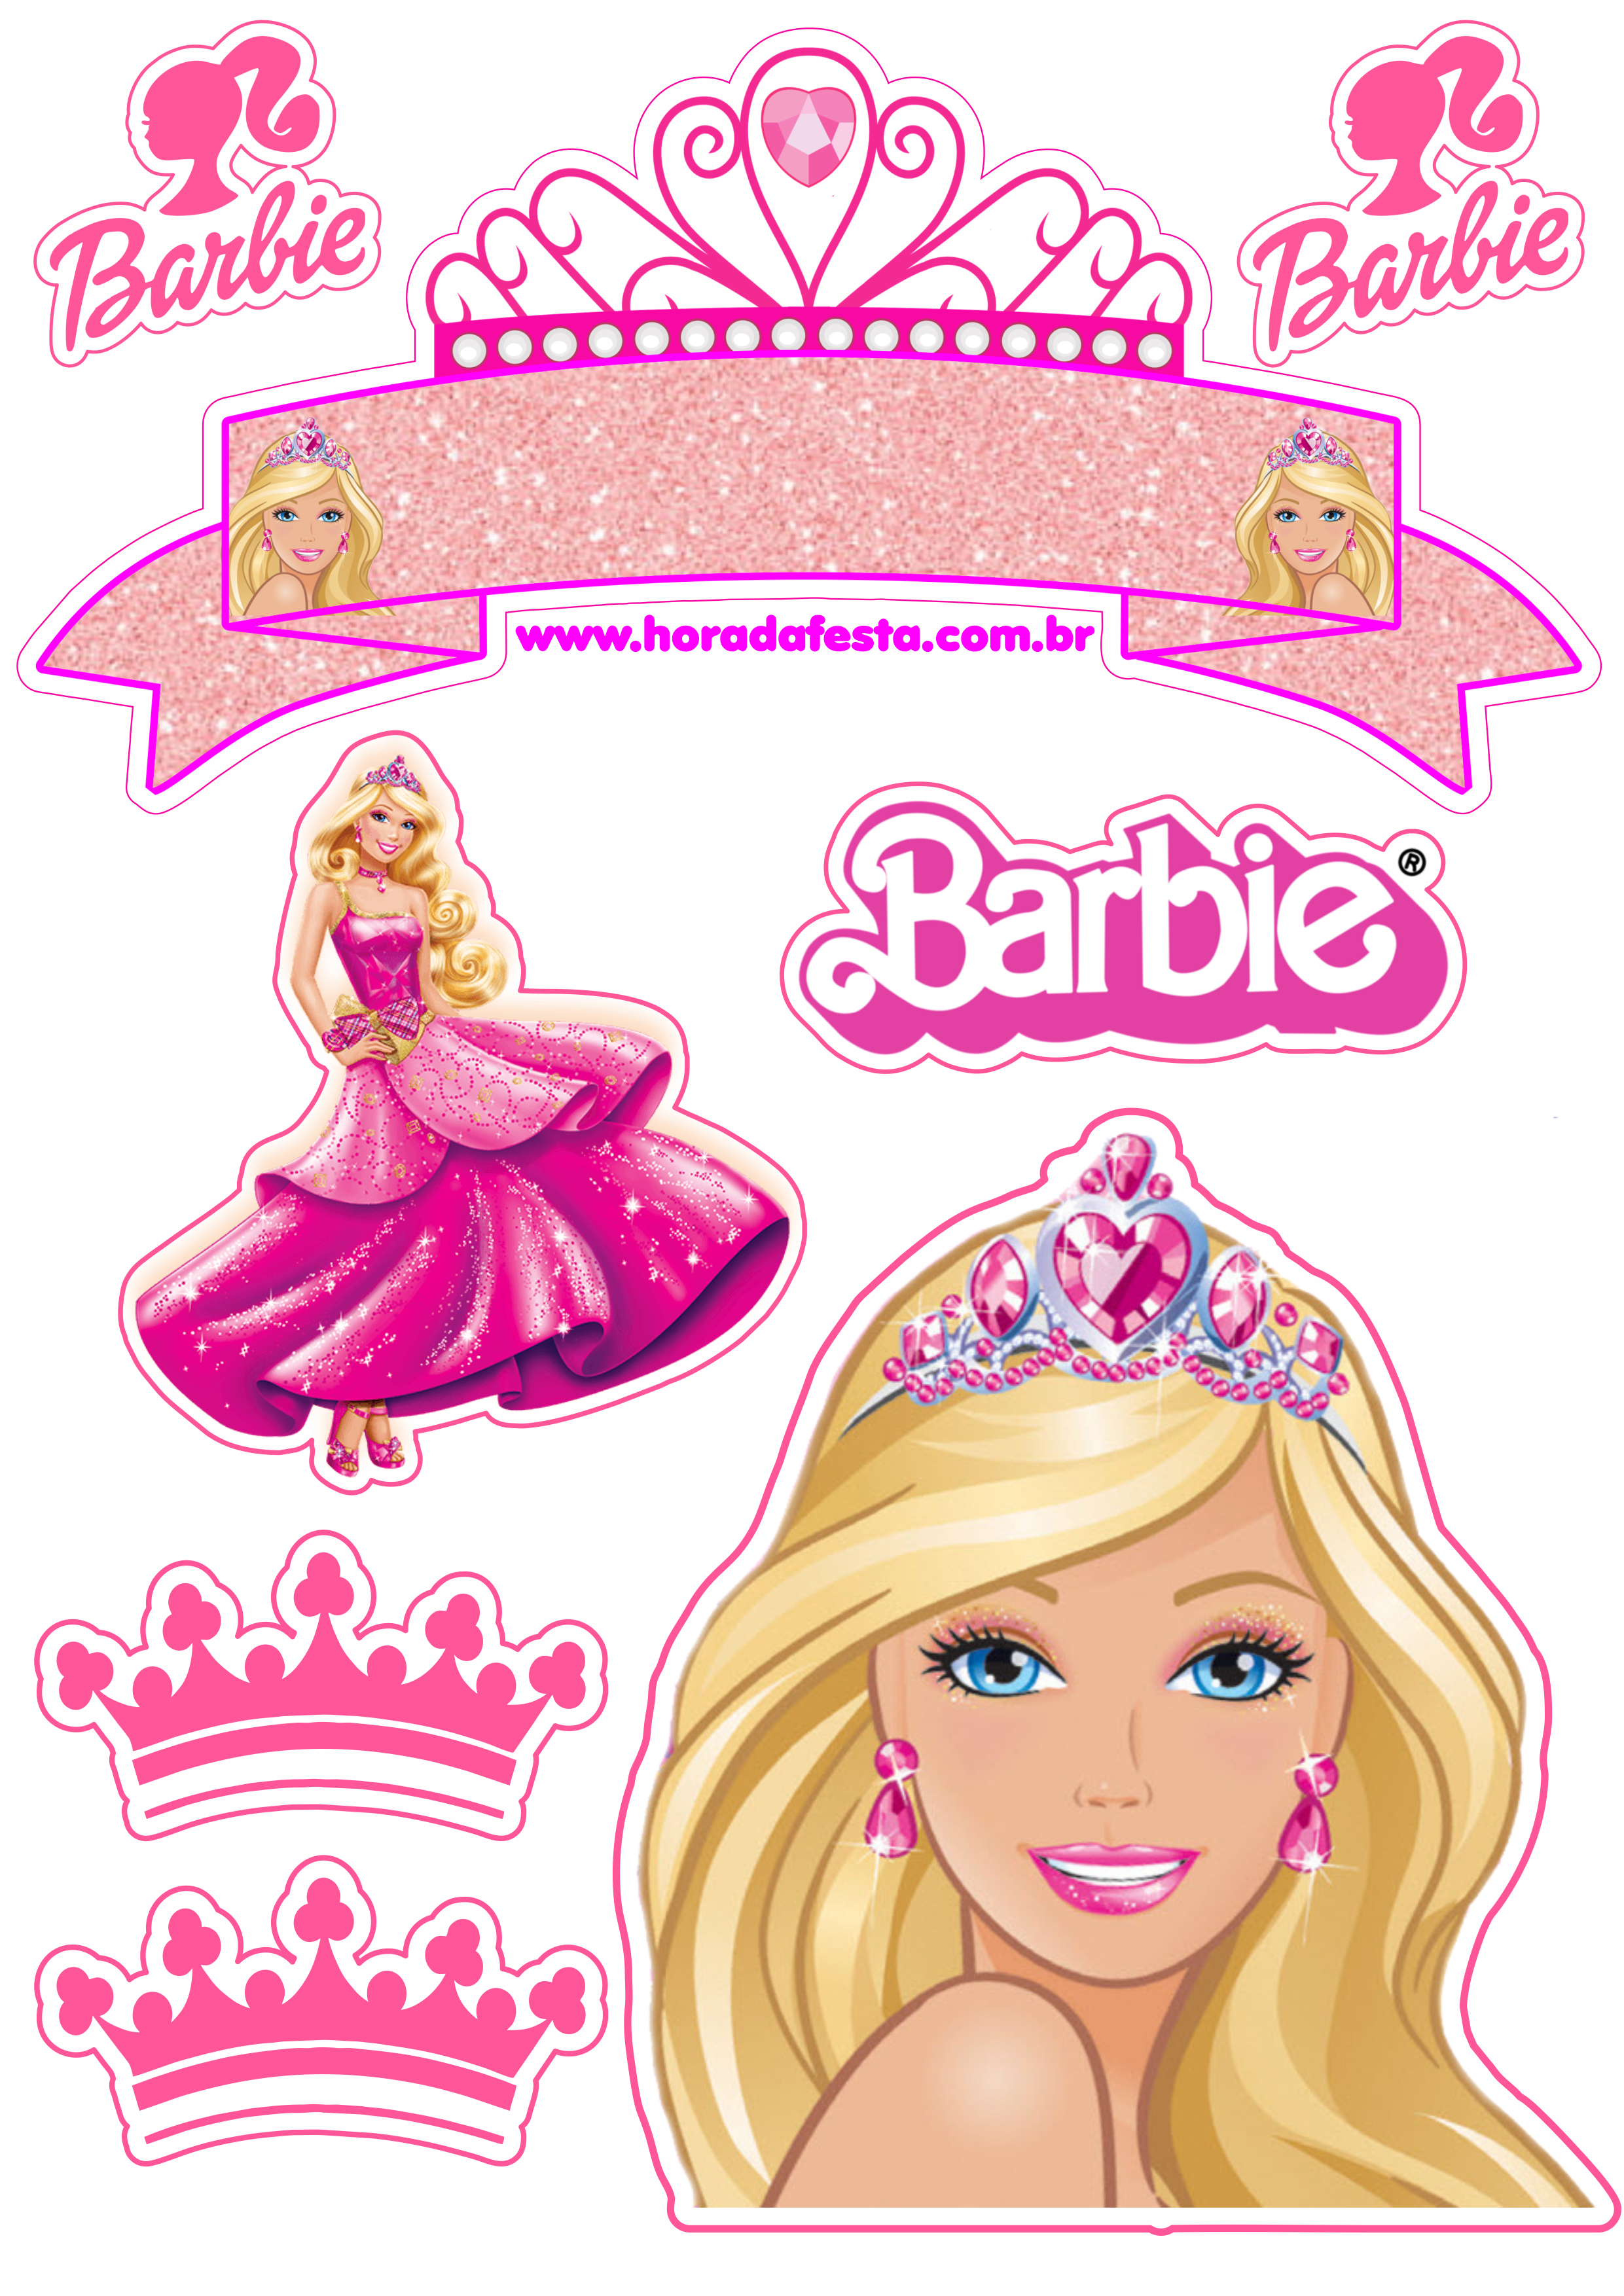 Topo de bolo Barbie sereia.